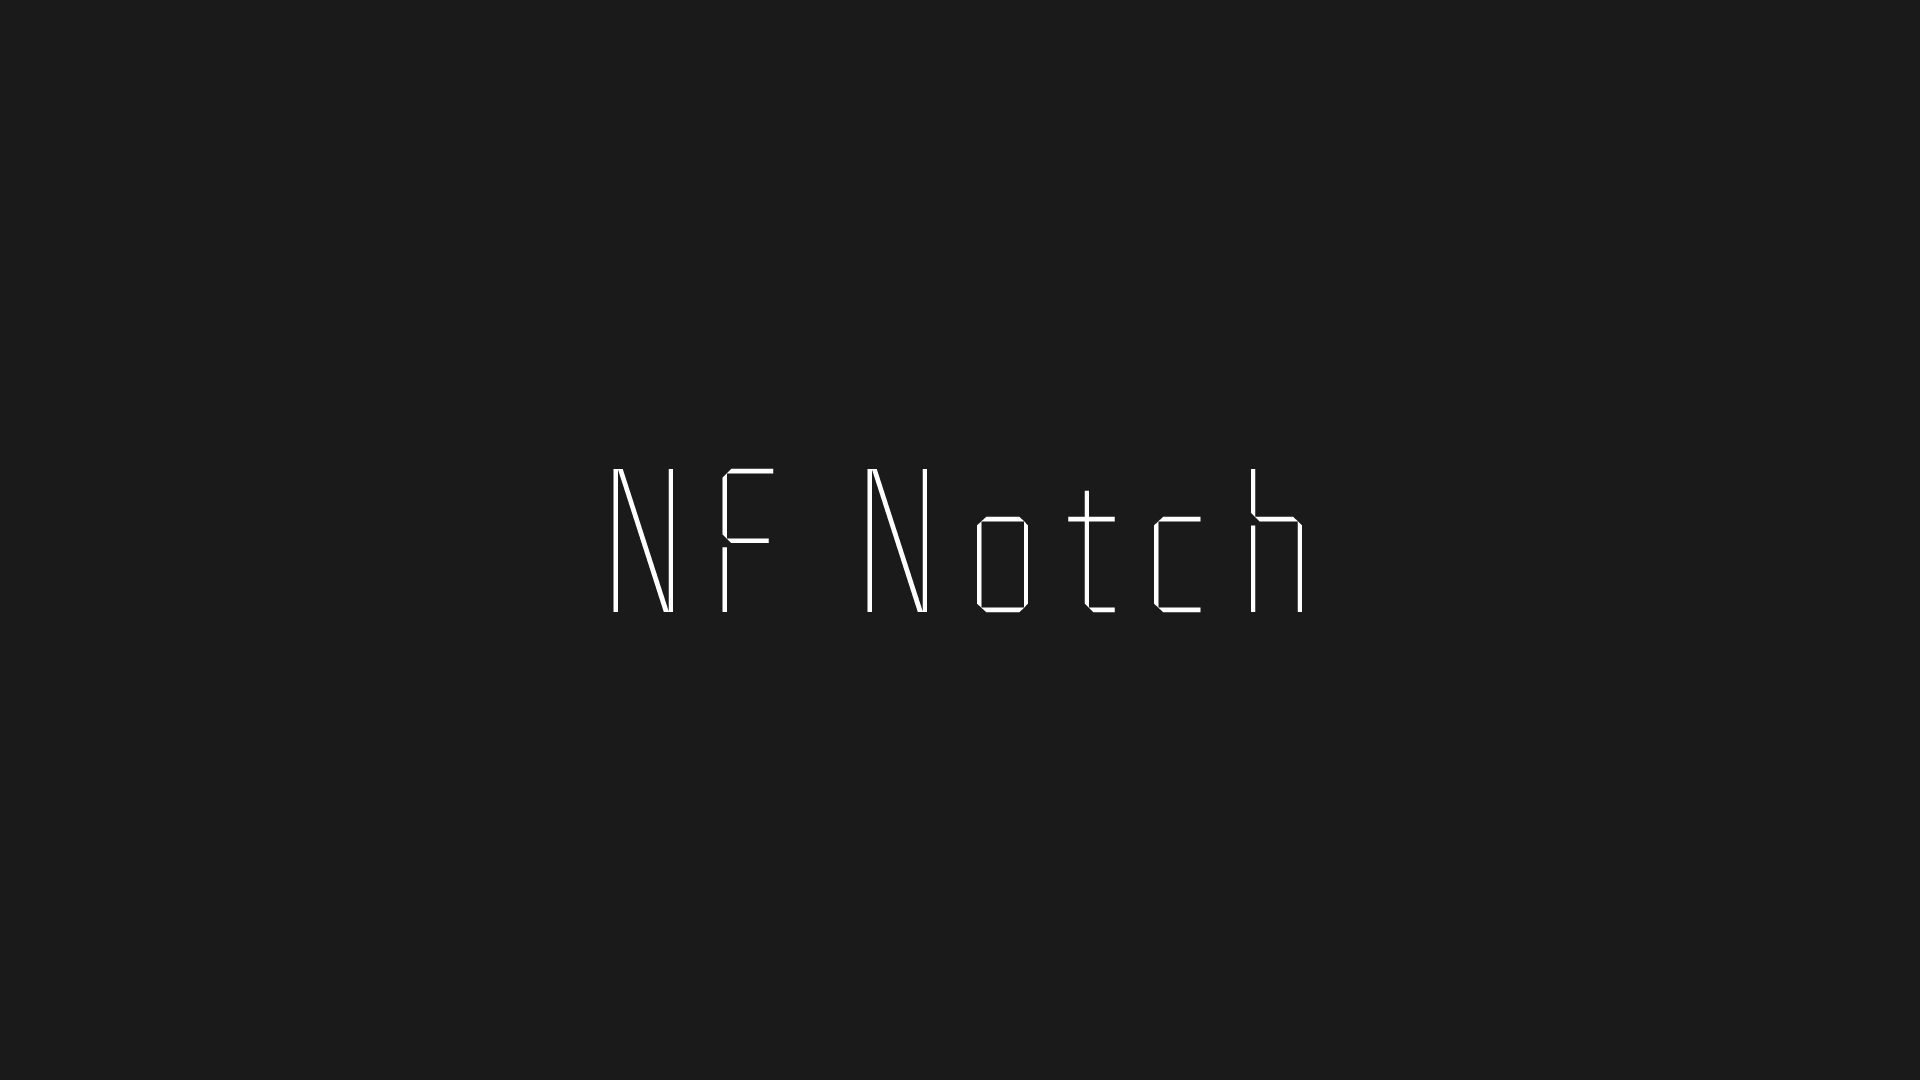 NF Notch